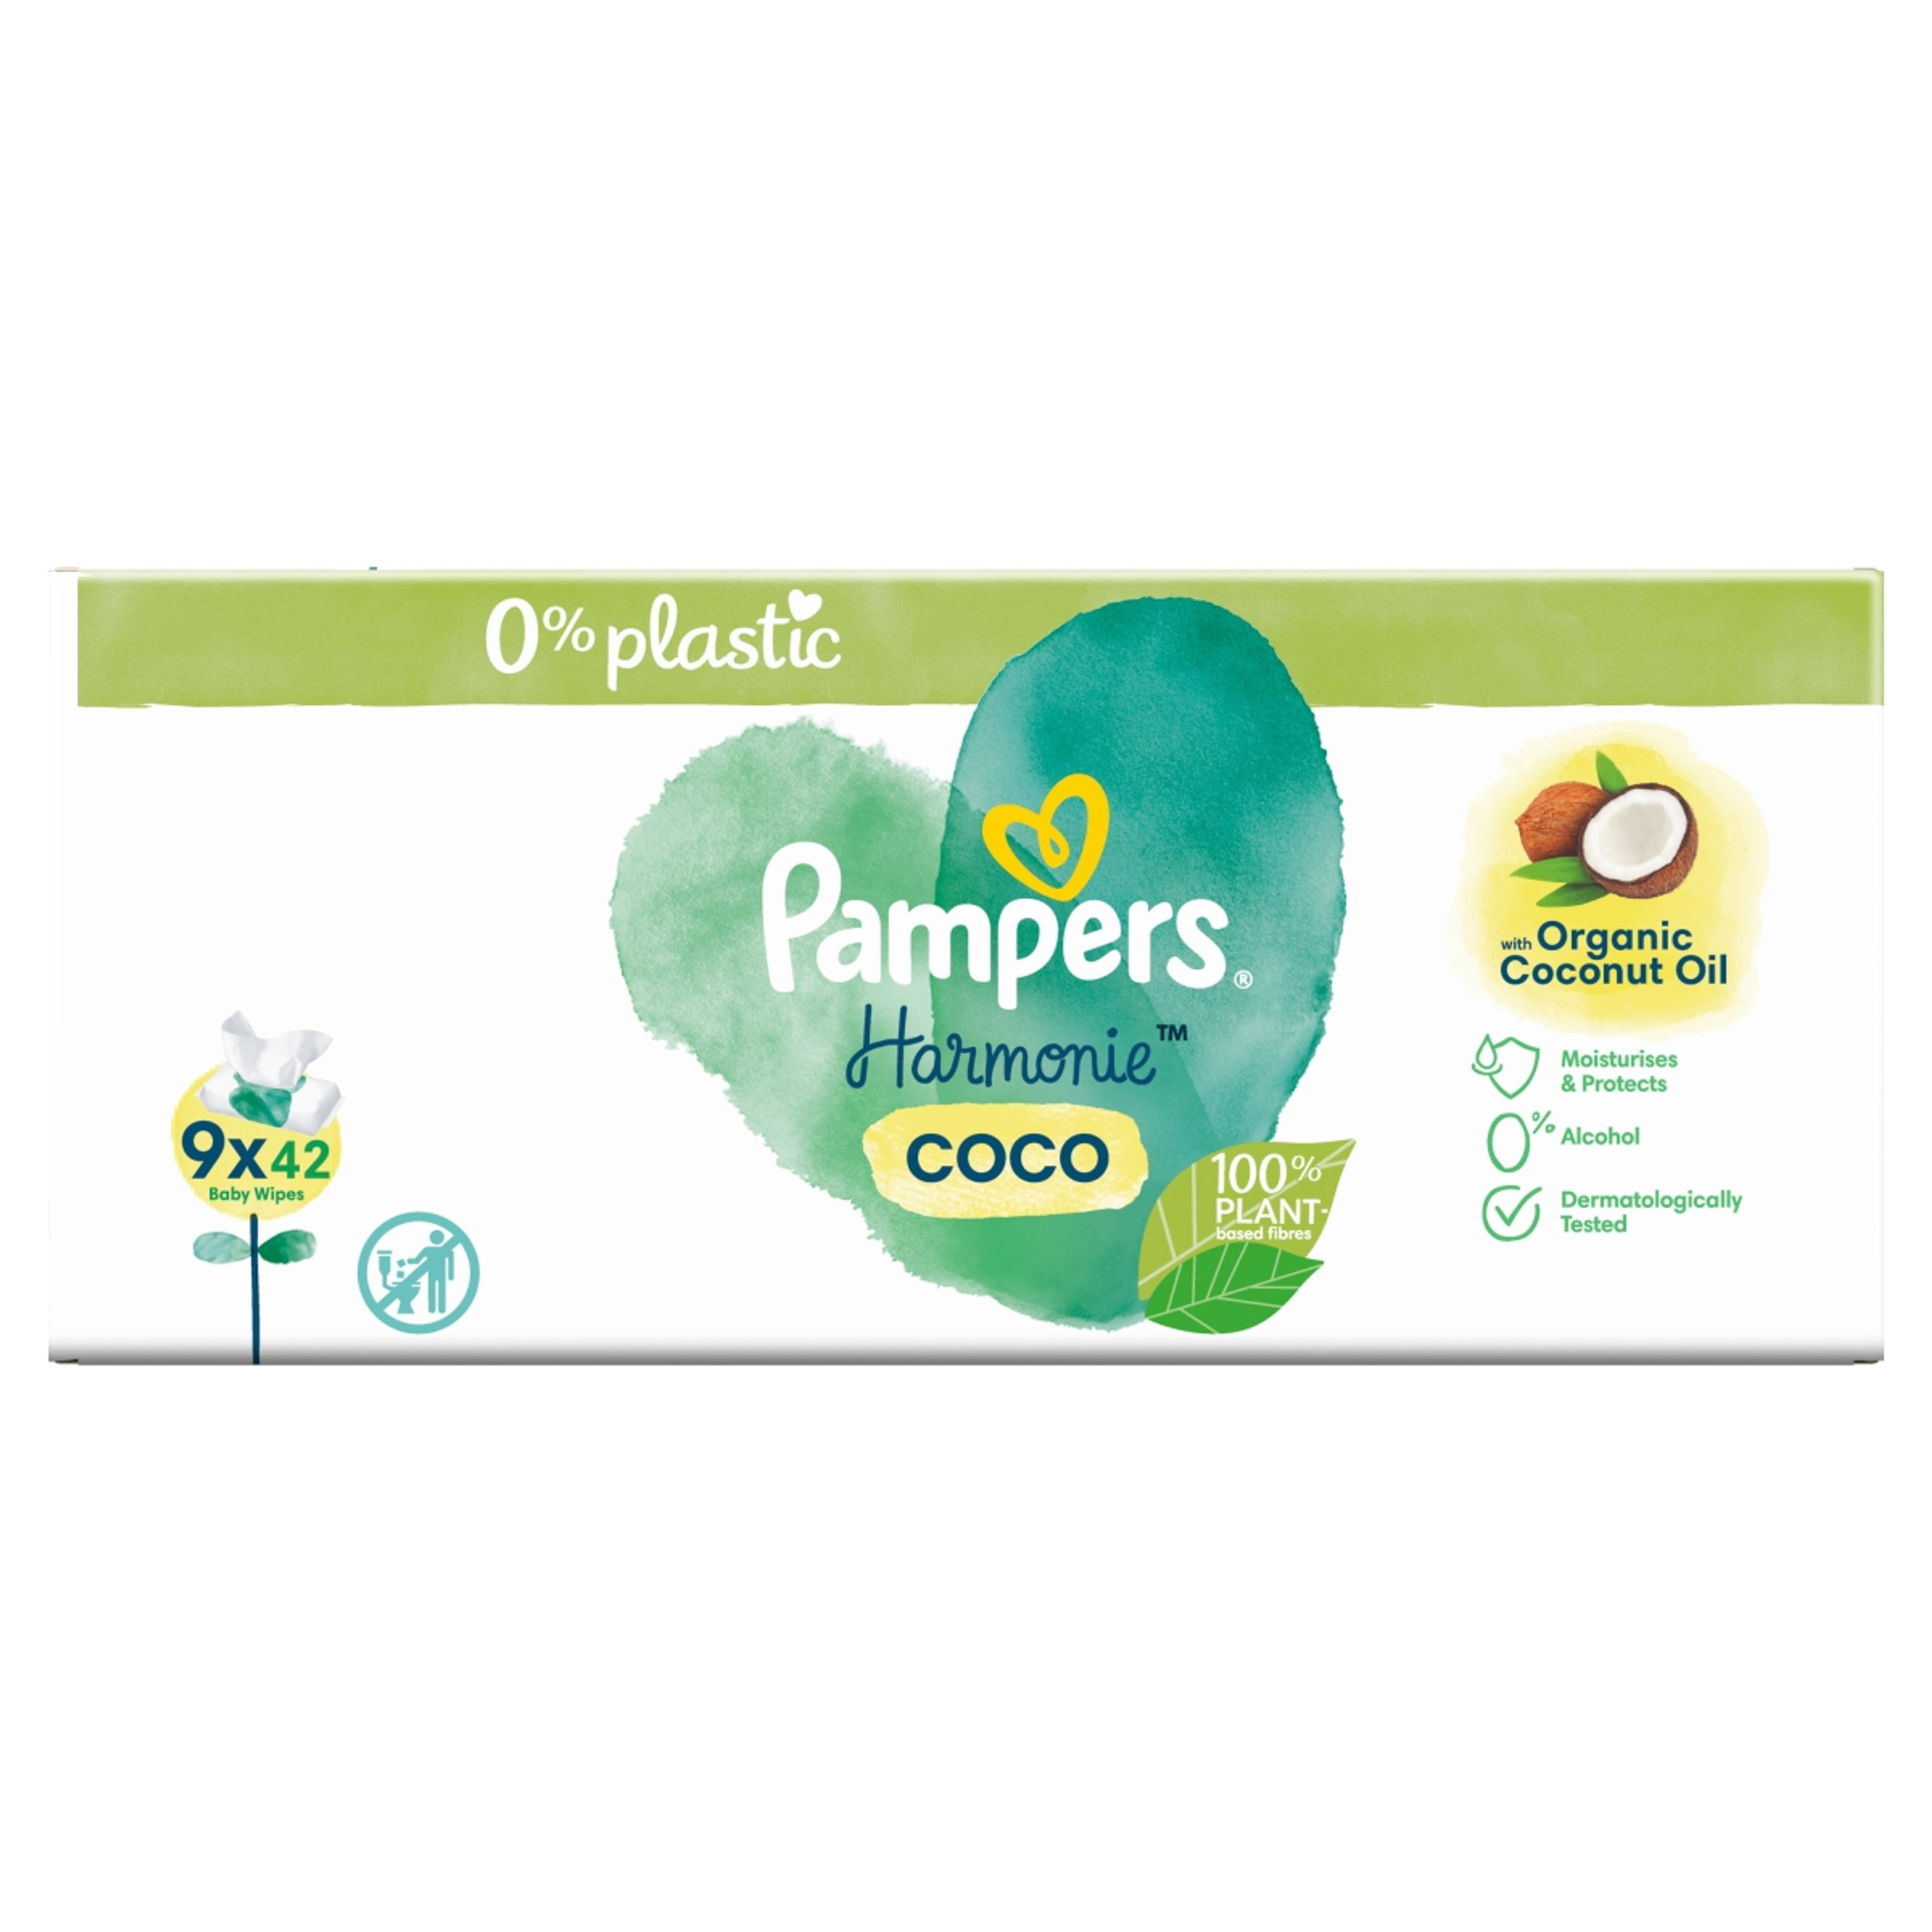 Pampers Harmonie Coco nedves törlőkendő, 9 csomag - 378 db